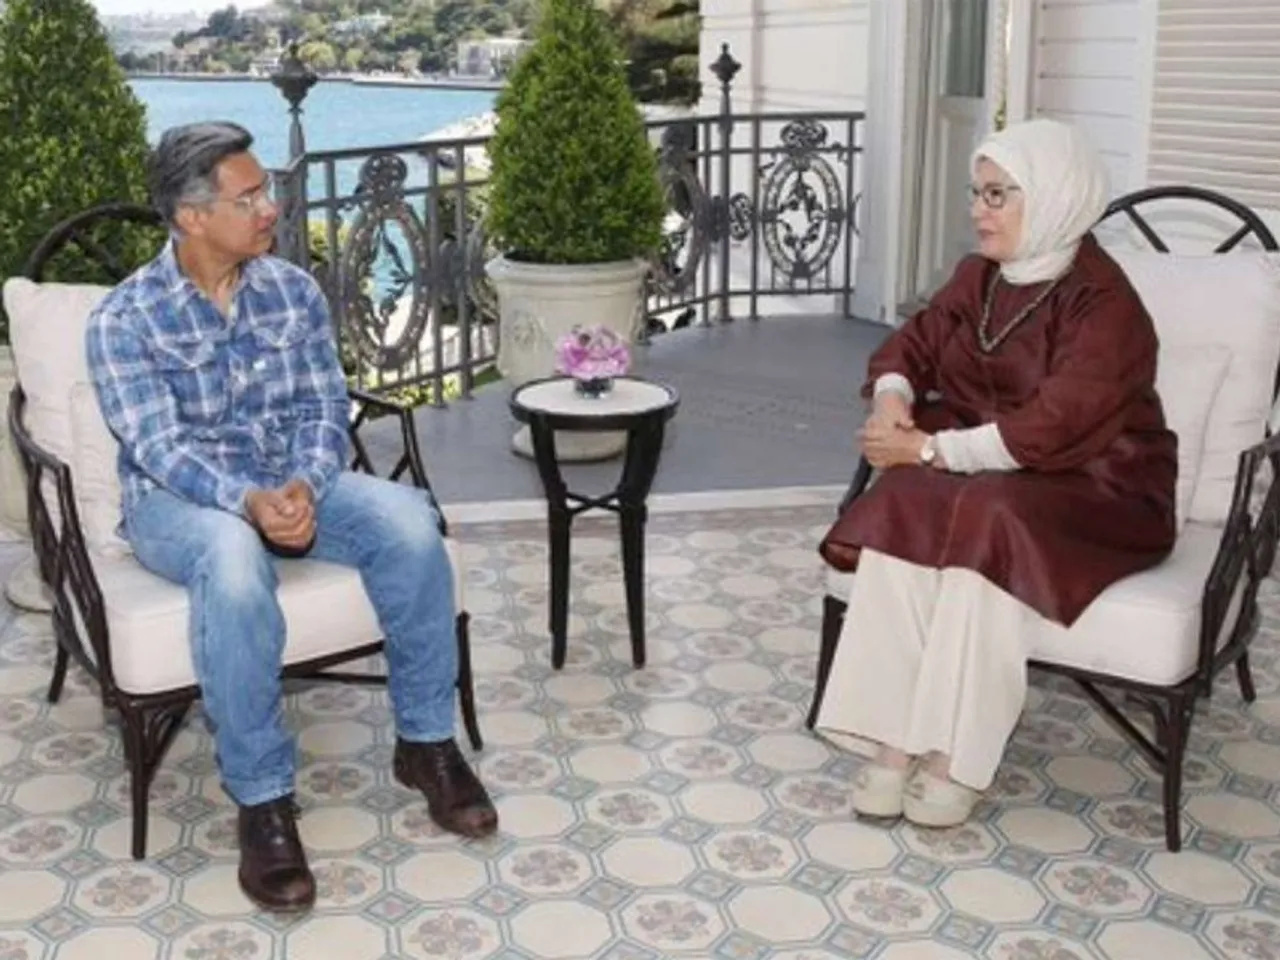 आमिर खान ने तुर्की के राष्ट्रपति की पत्नी से की मुलाकात, अब हो रहे ट्रोल